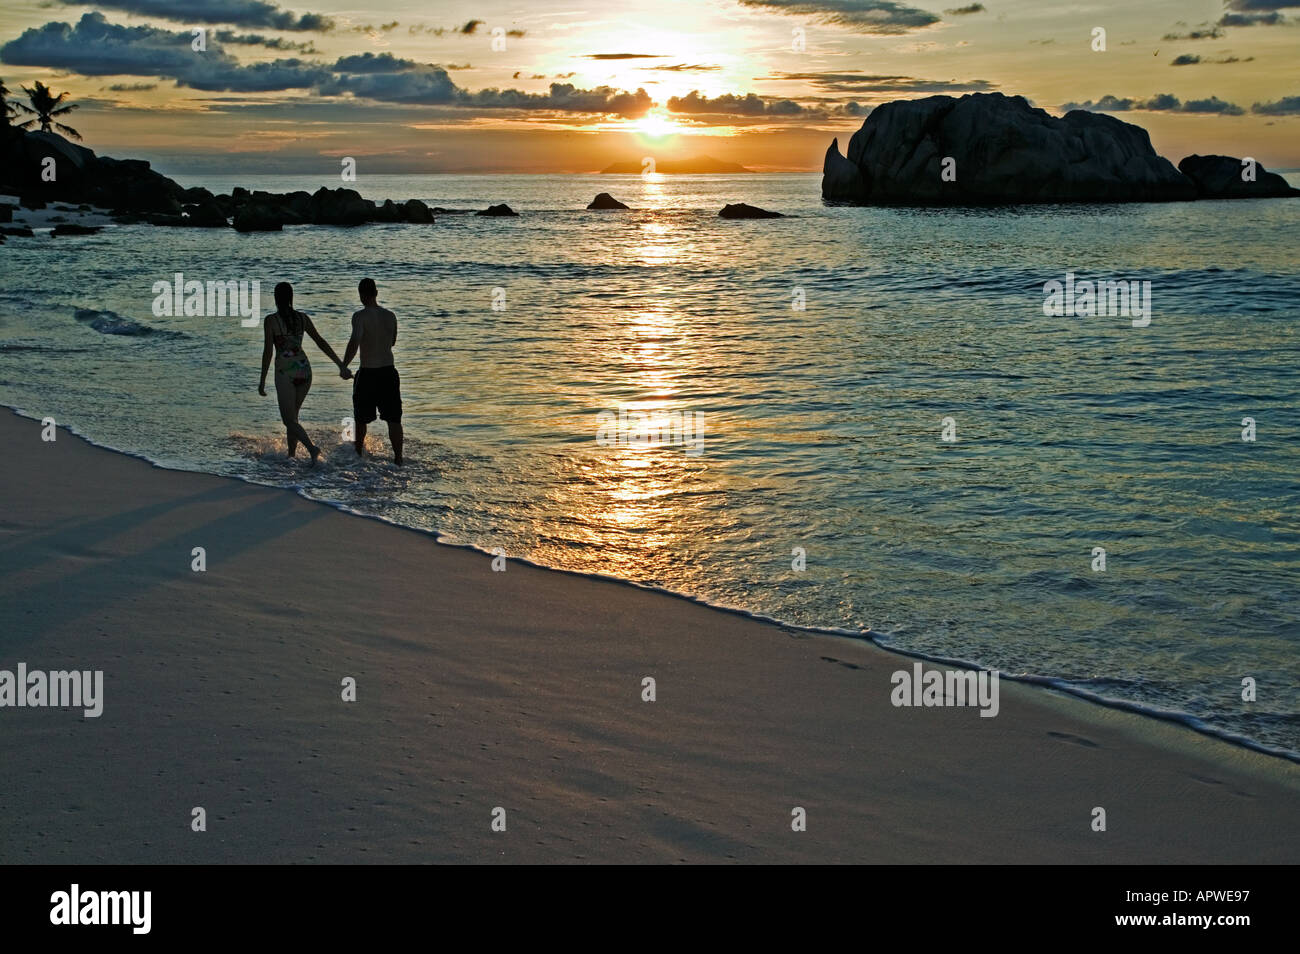 Les gens sur la plage au coucher du soleil parution Modèle Seychelles Cousine Island Banque D'Images